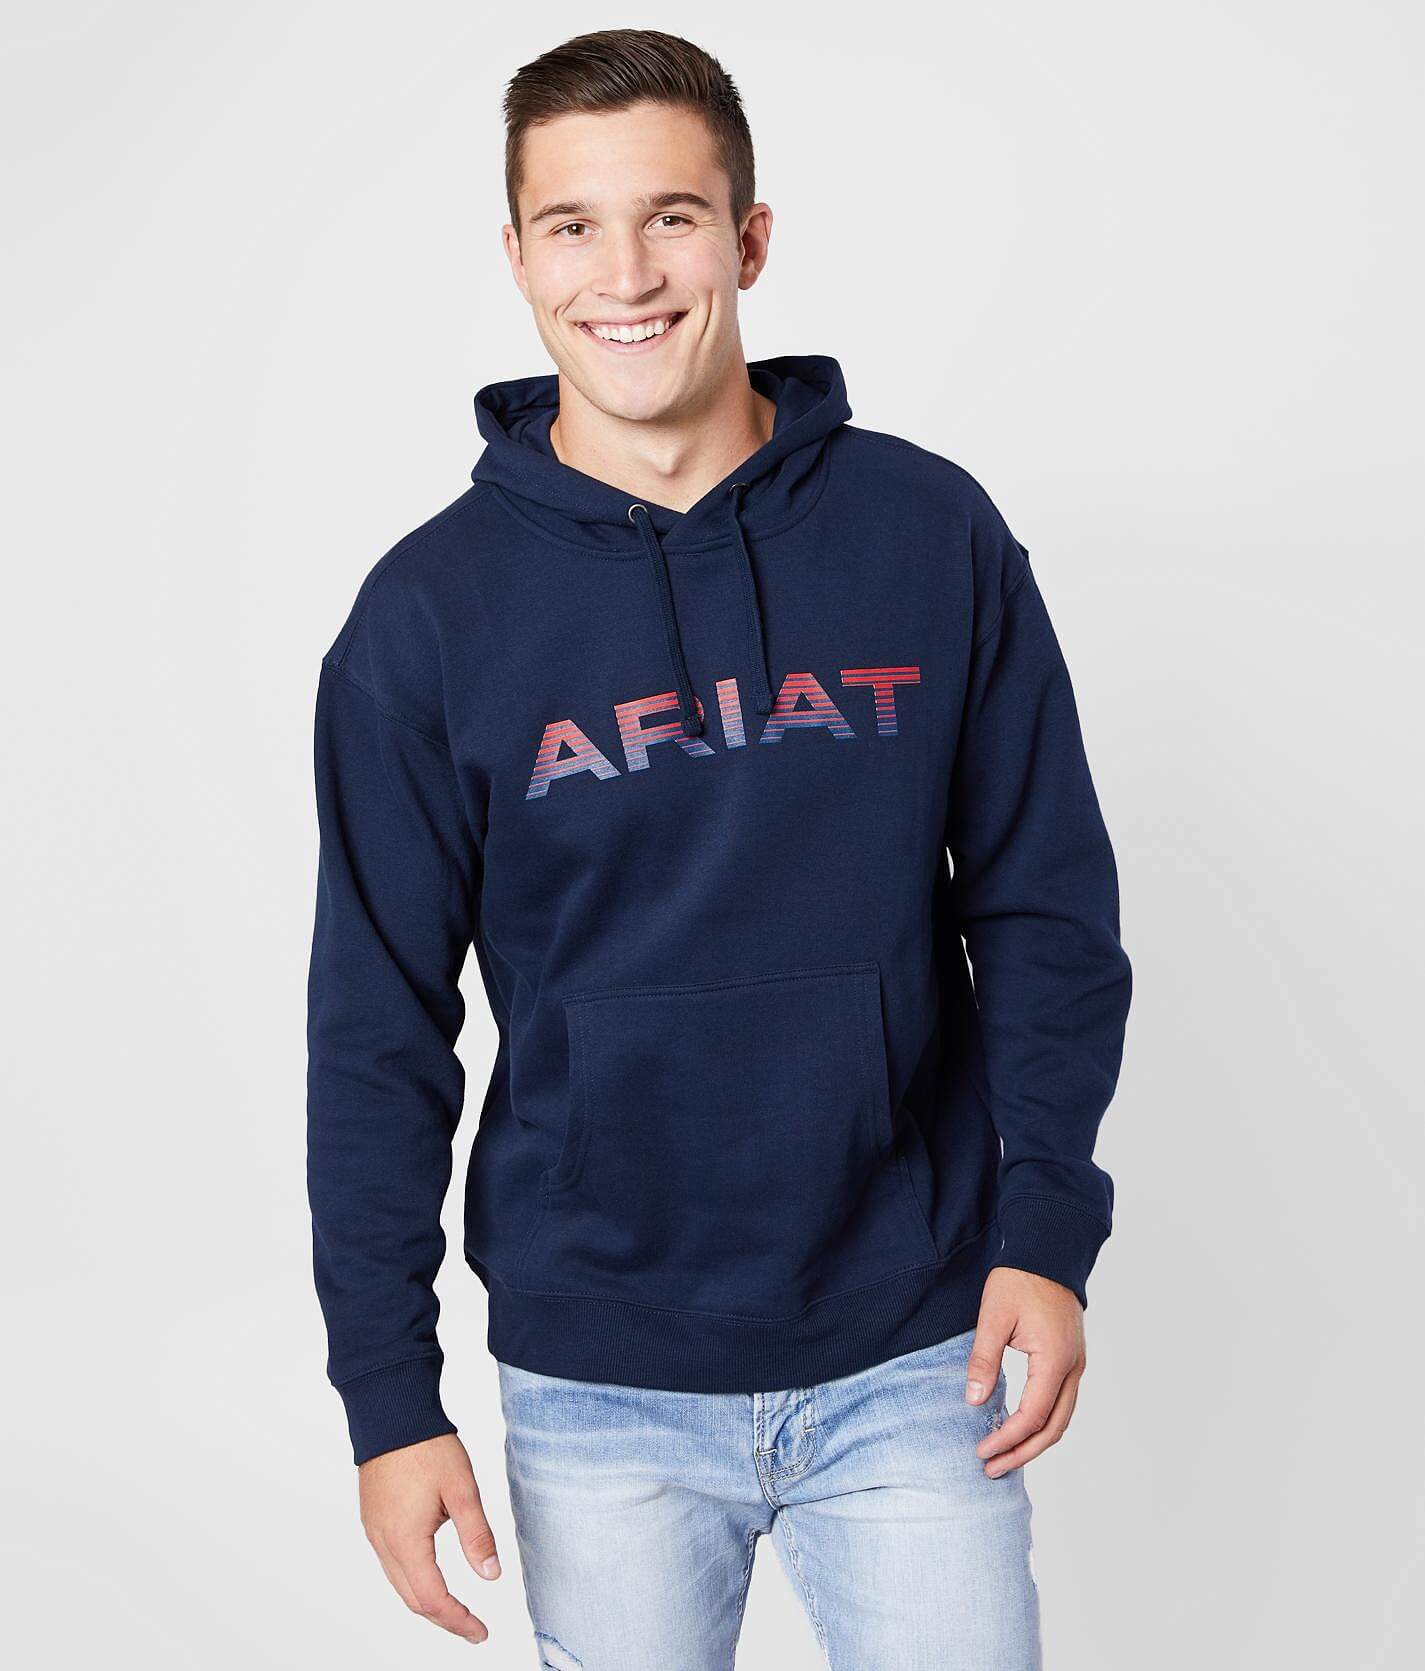 men's ariat hoodies